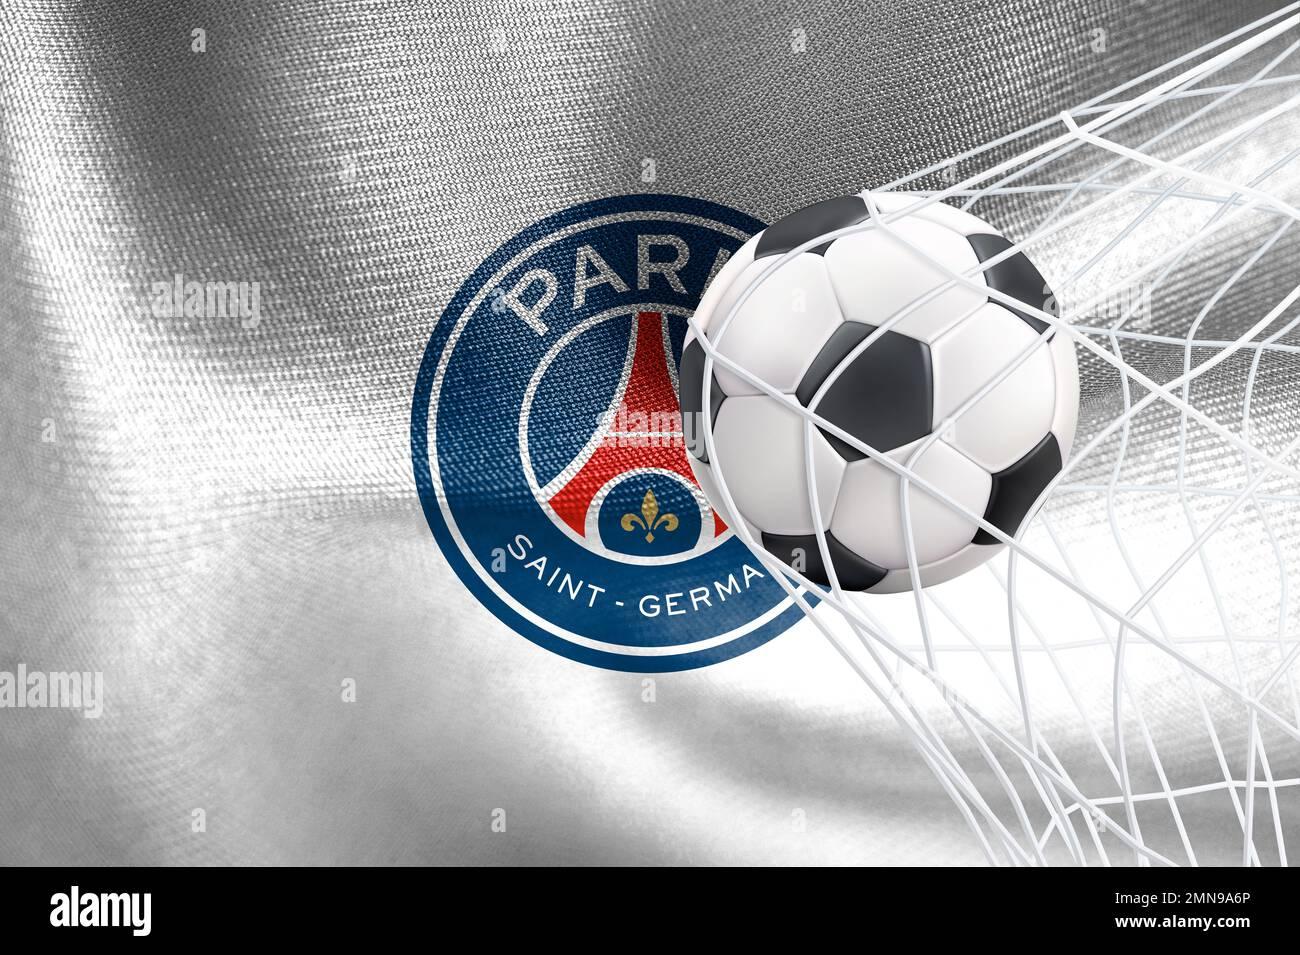 Uefa Champions League Paris Saint Germain F C Flag With A